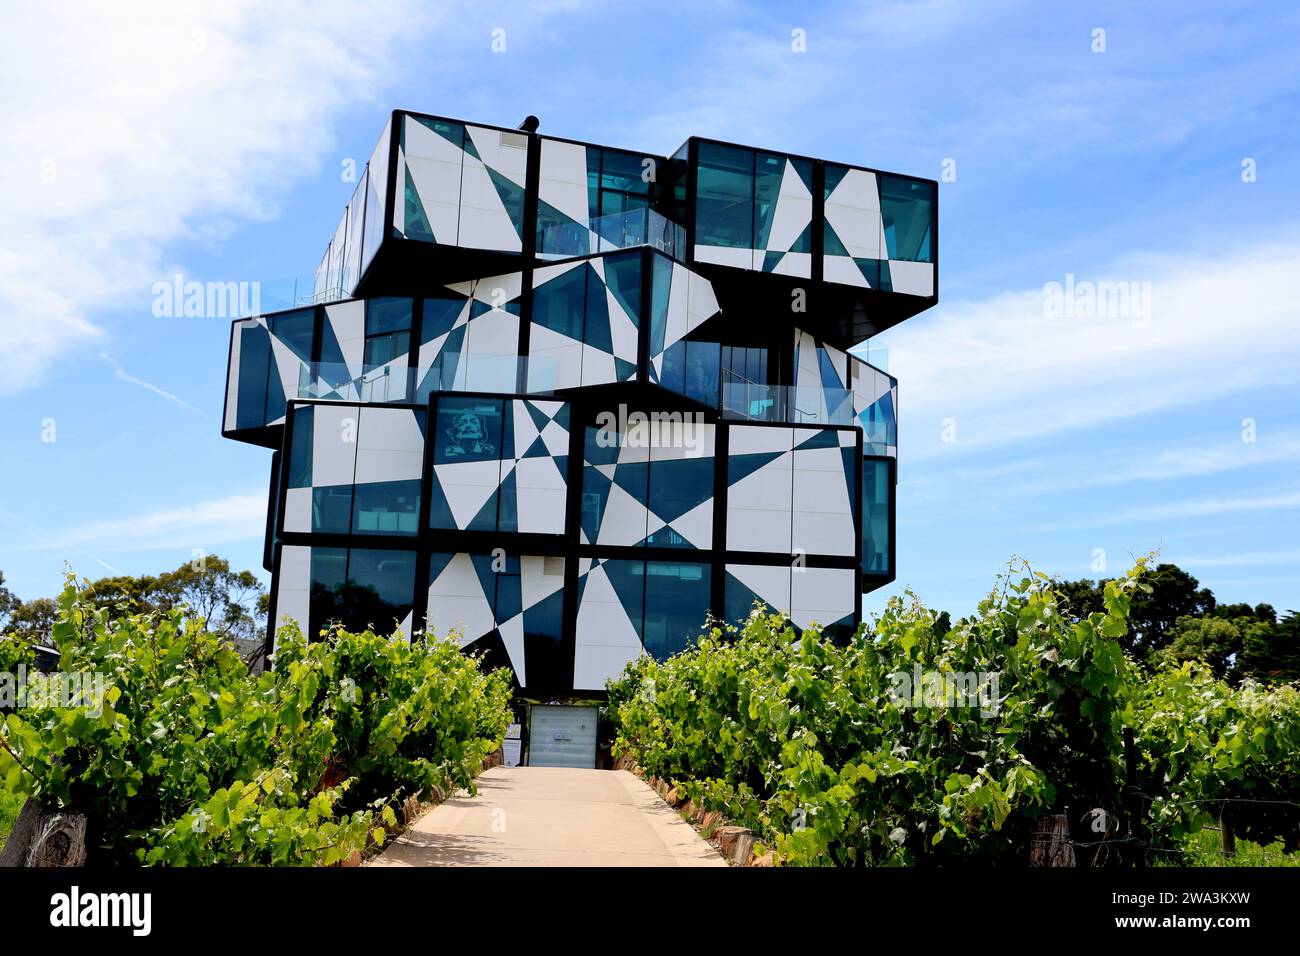 Le bâtiment Cube de la cave vinicole d'Arenberg dans le district de McLaren Vale en Australie méridionale Banque D'Images